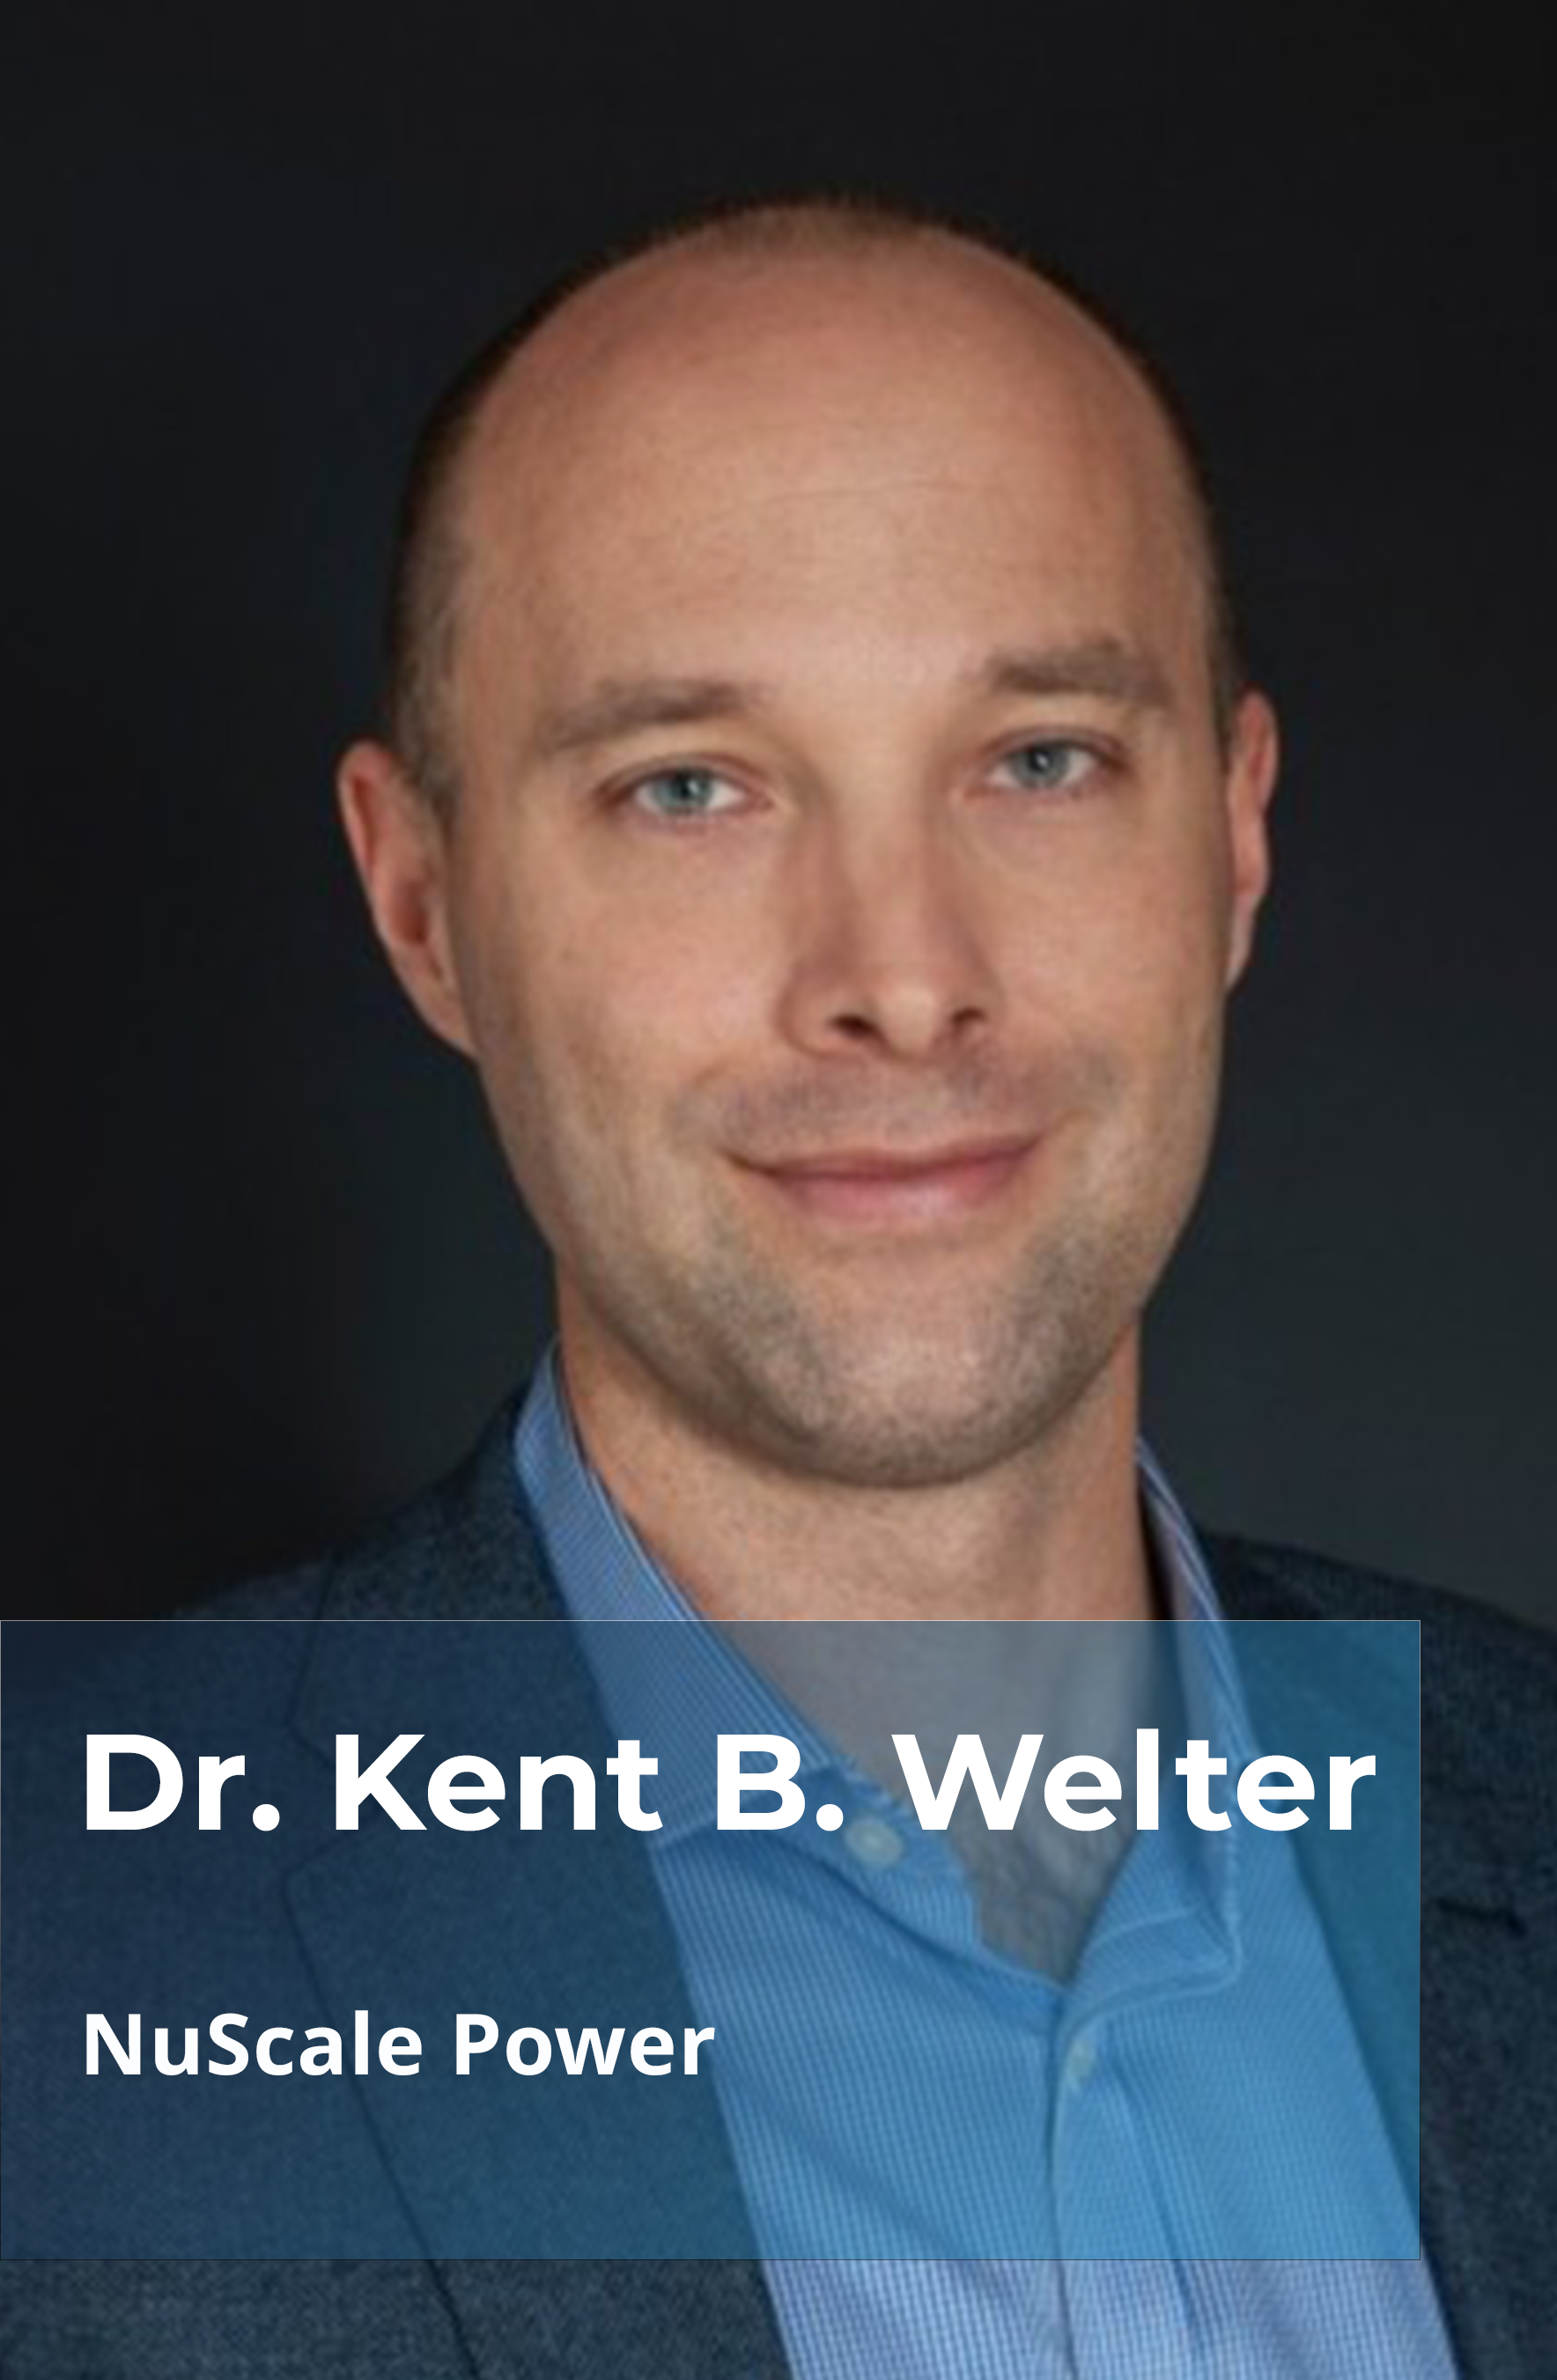 Dr. Kent B. Welter